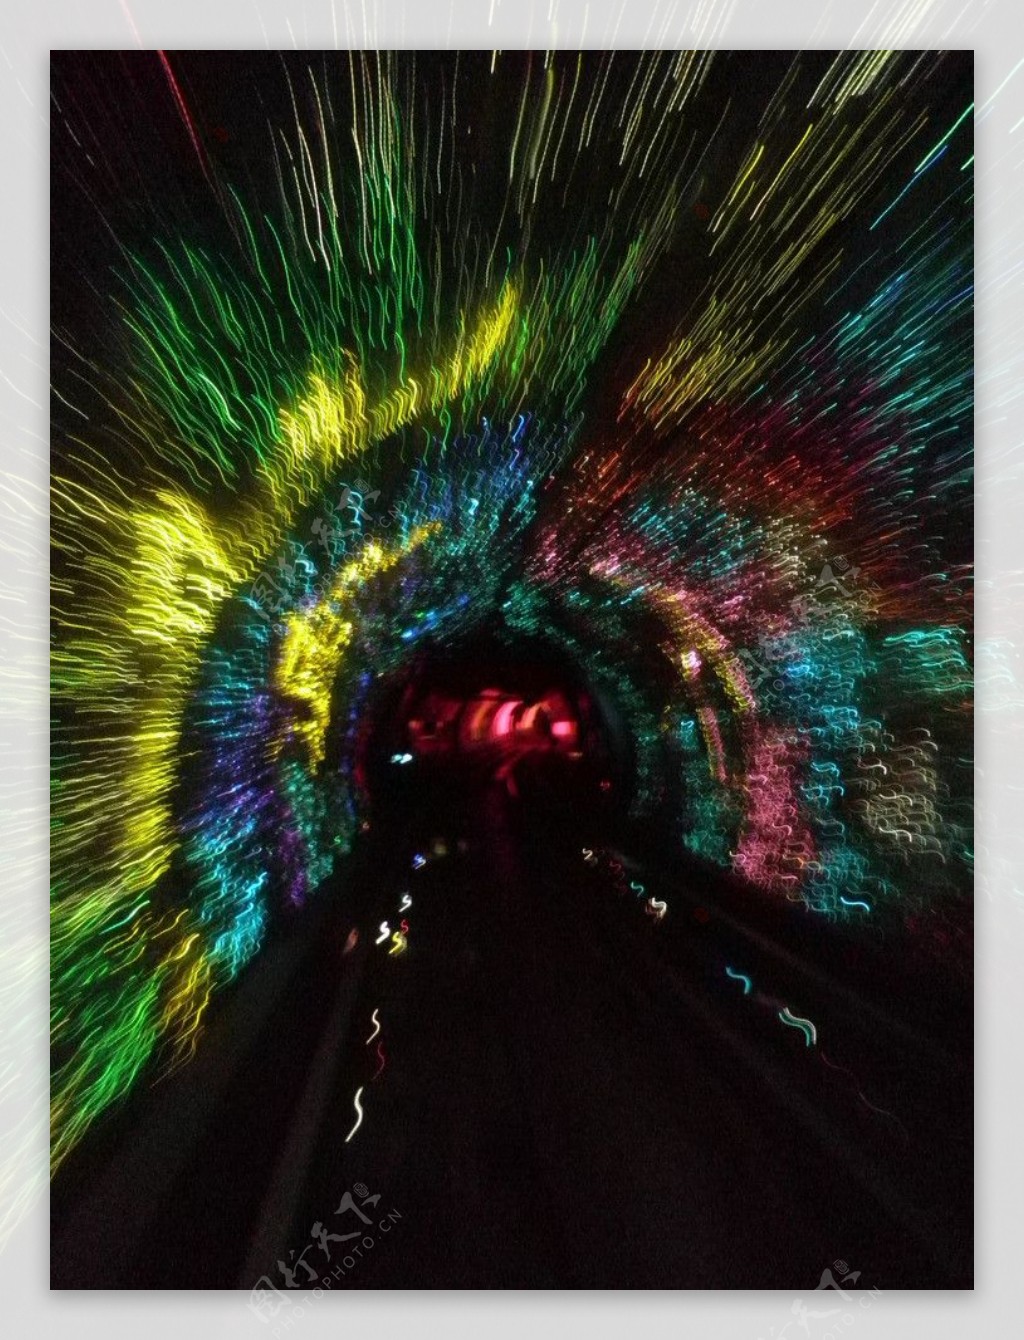 上海观光隧道图片